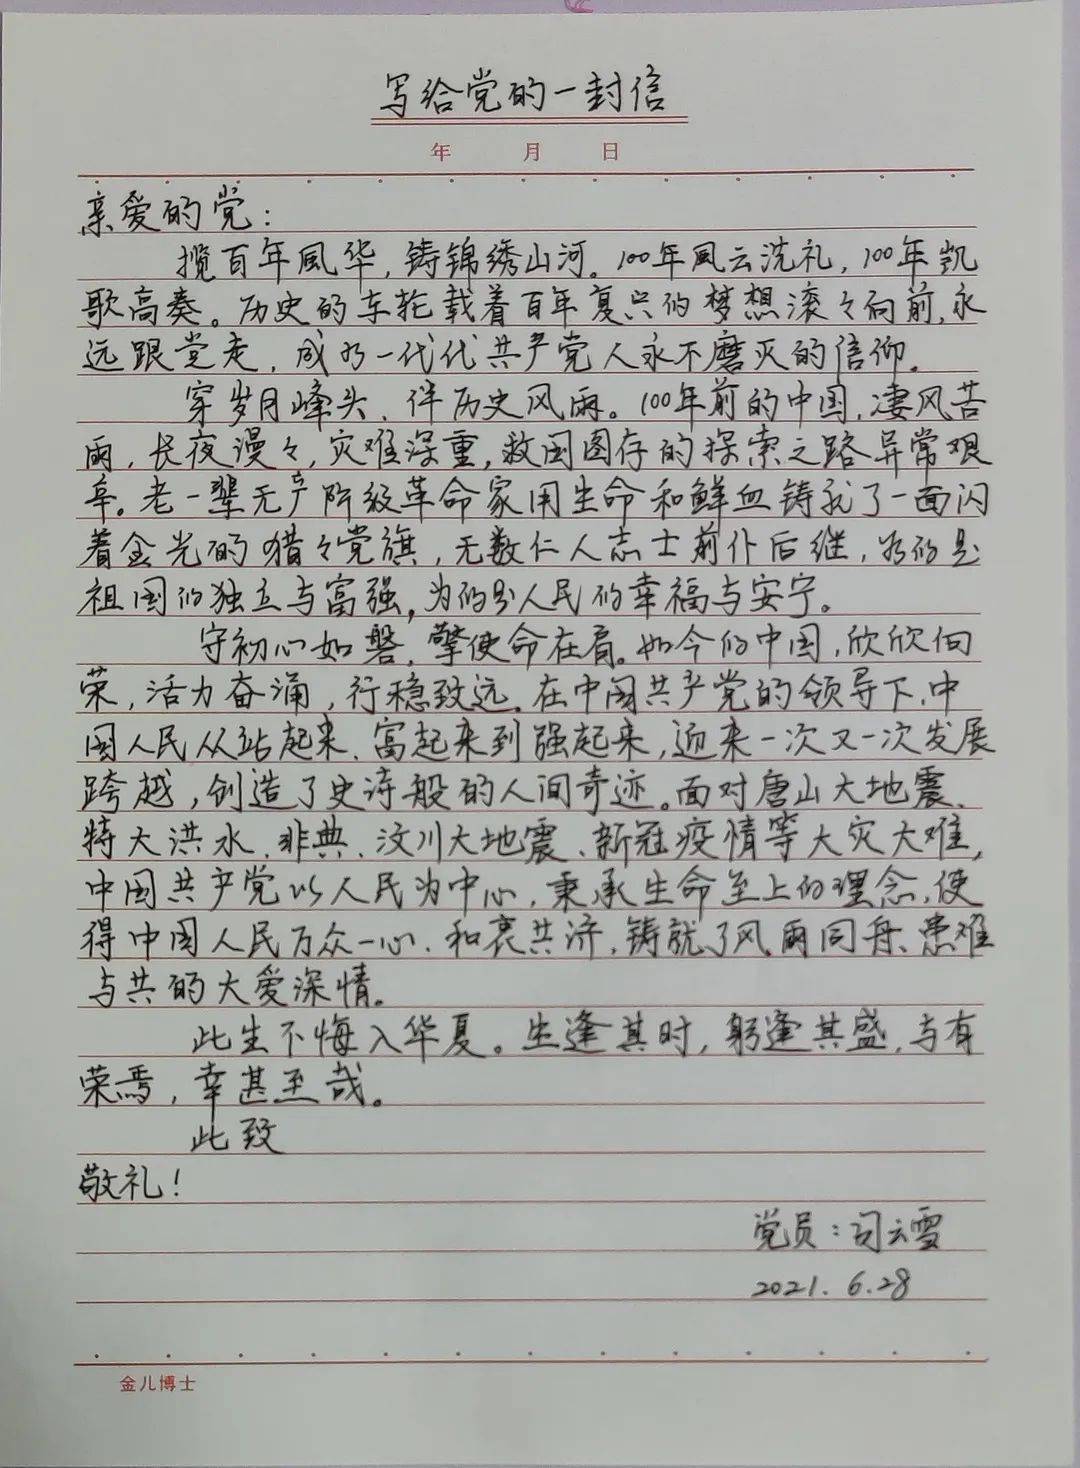 笔尖凝赤诚书信庆华诞第三技术部开展写给党的一封信活动